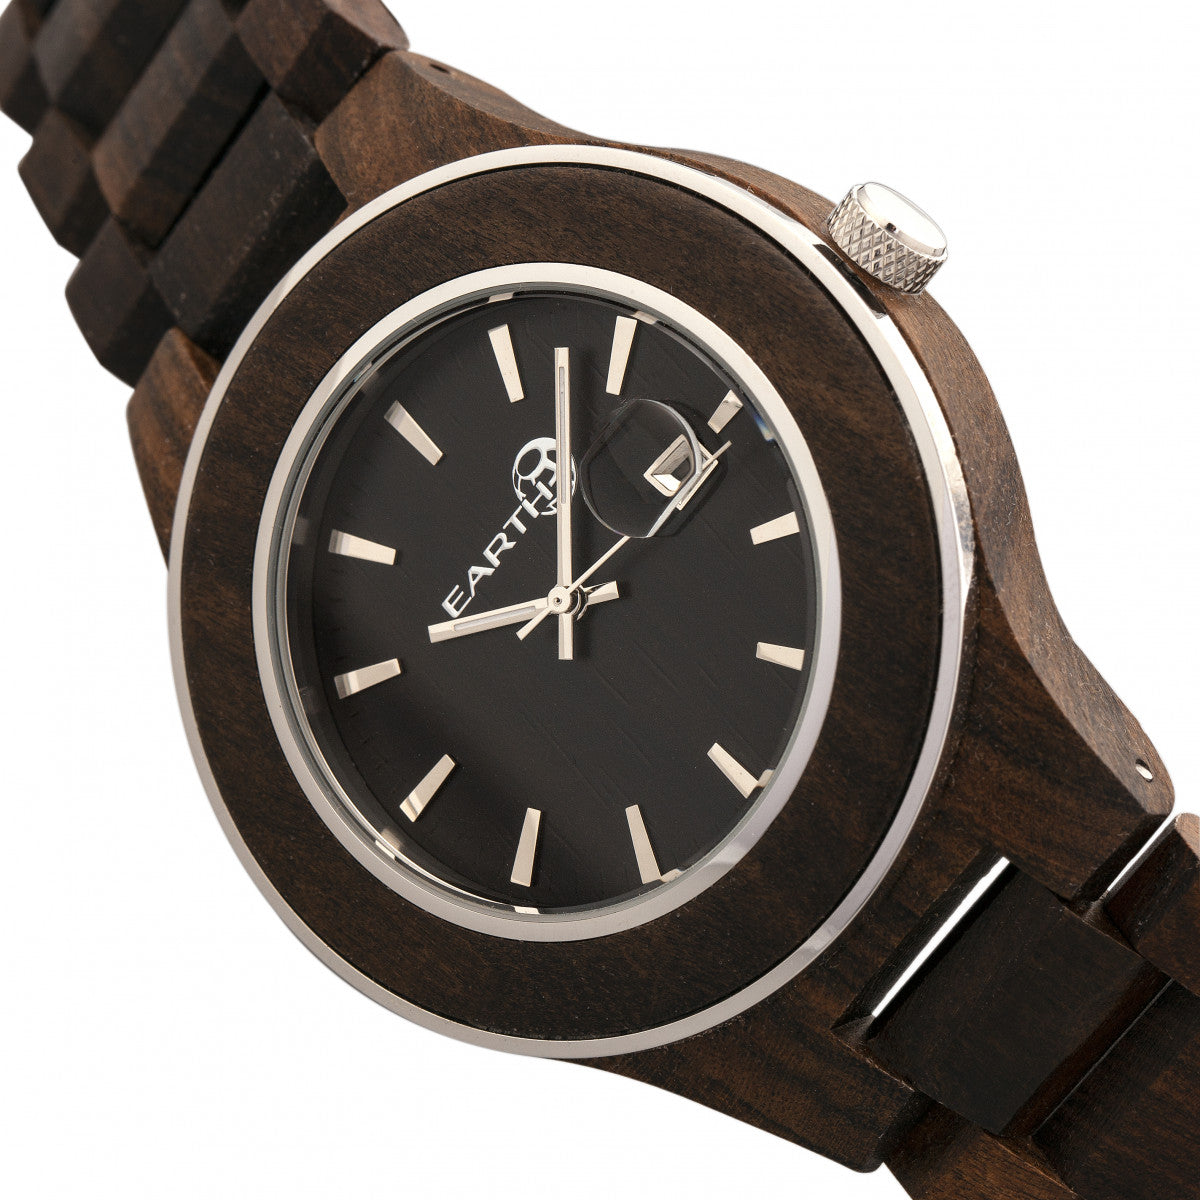 Earth Wood Cherokee Bracelet Watch w/Magnified Date - Dark Brown - ETHEW3402